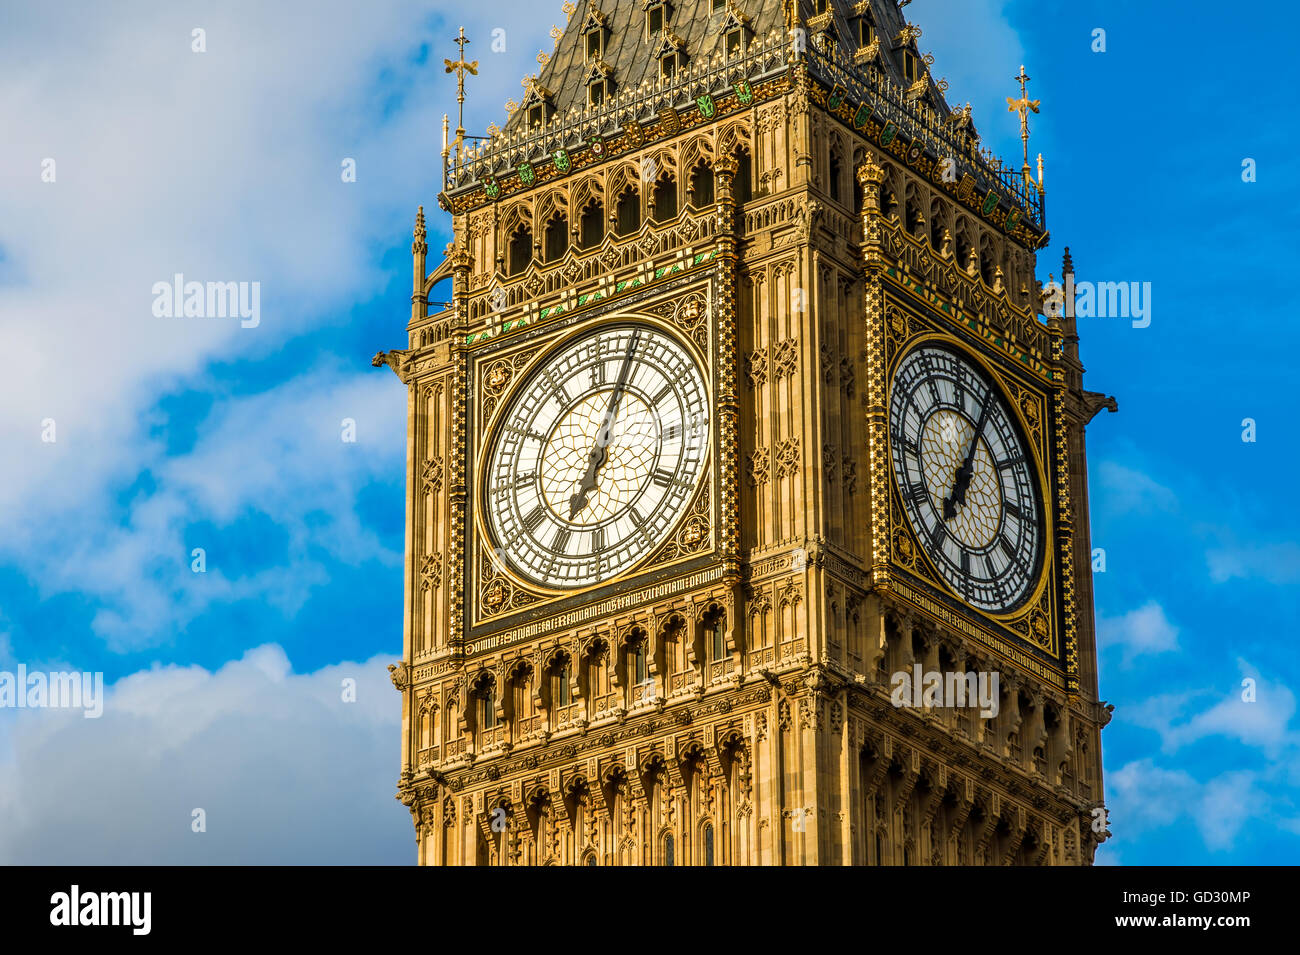 Gros plan de l'horloge de Big Ben à Londres Banque D'Images